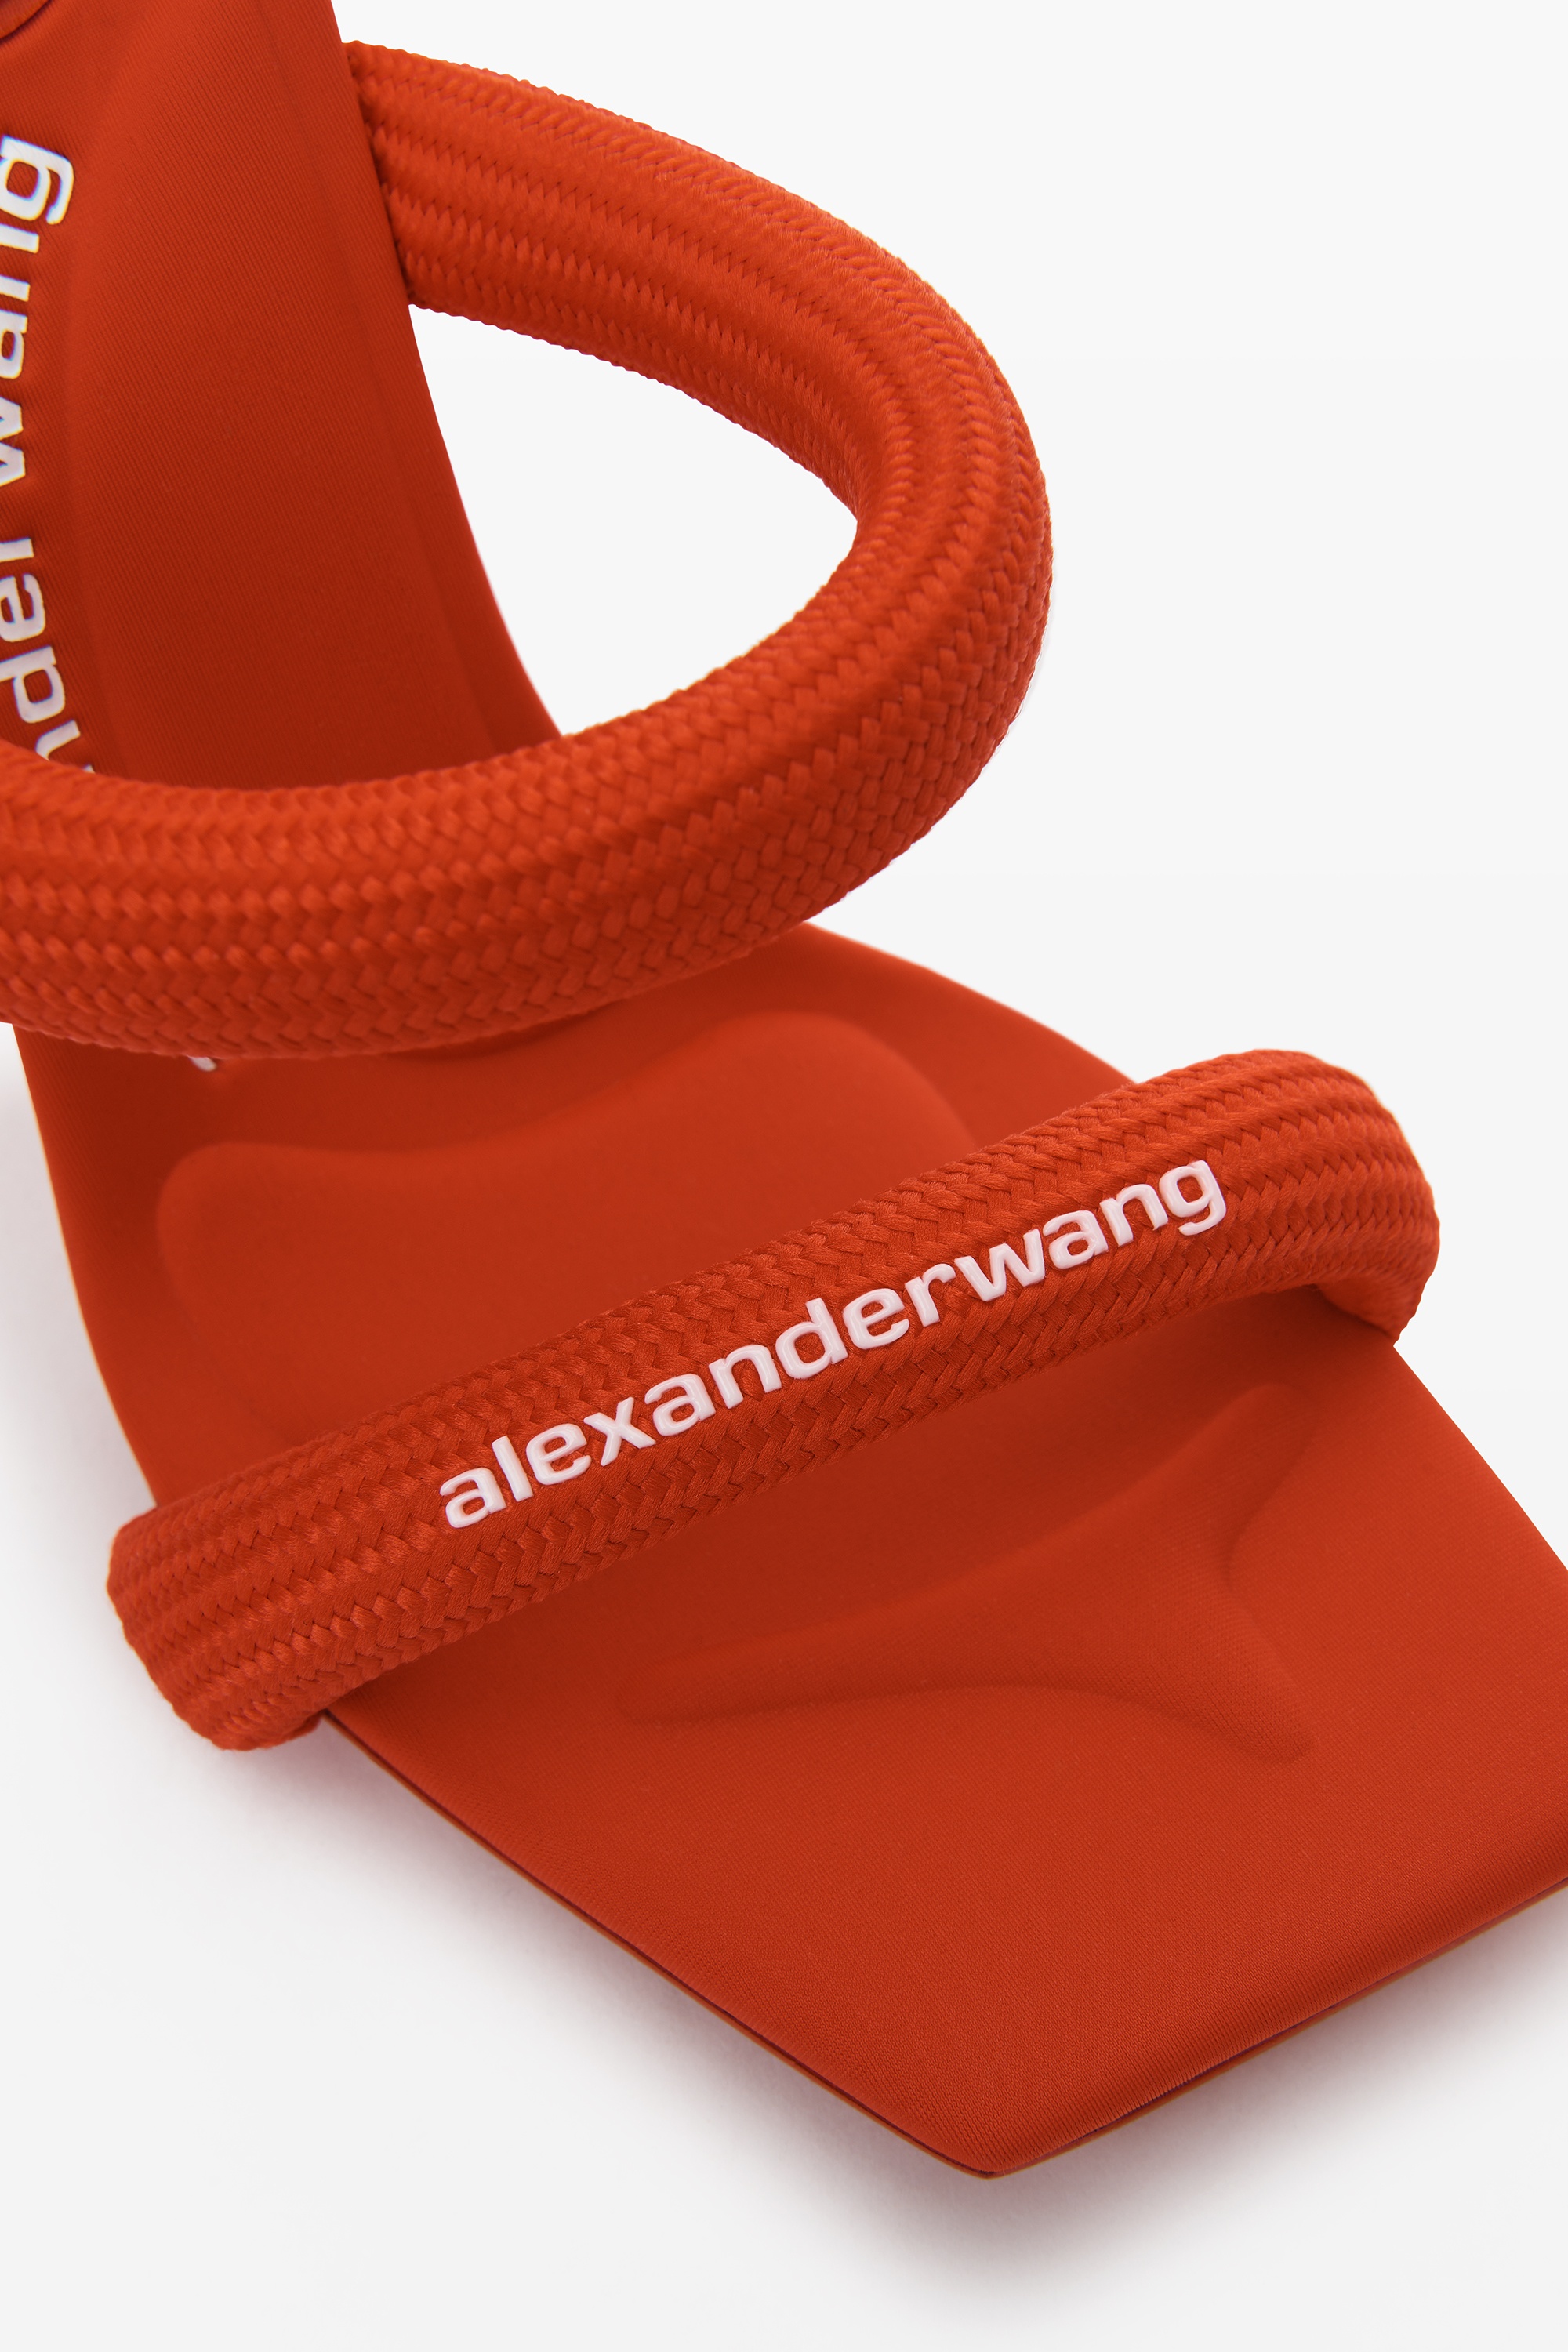 Alexander Wang Julie 105mm sandals - Red